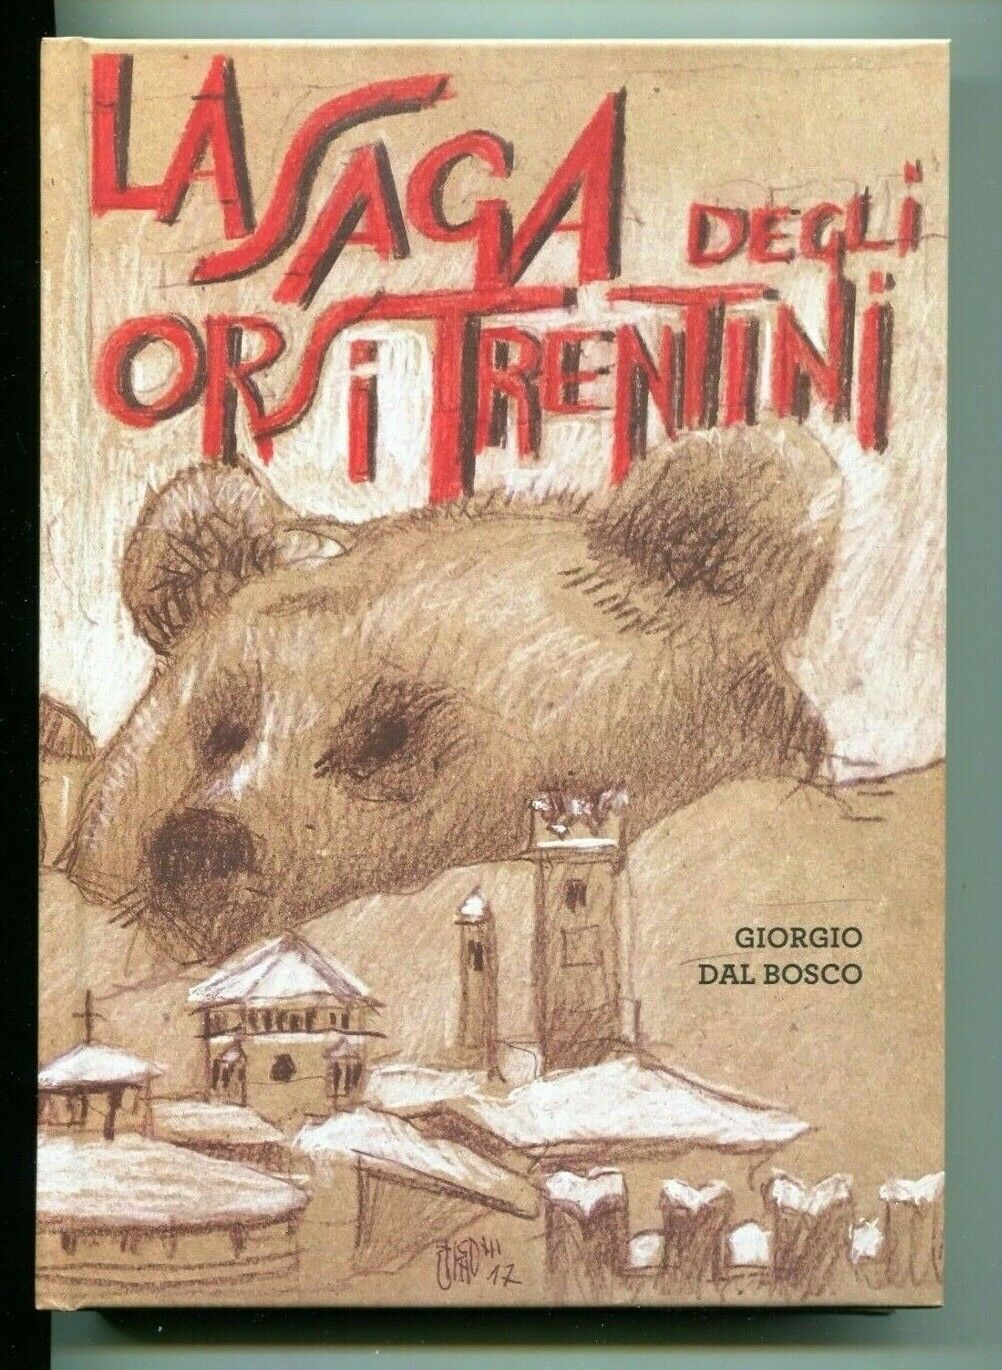 La saga degli orsi trentini - Giorgio Dal Bosco